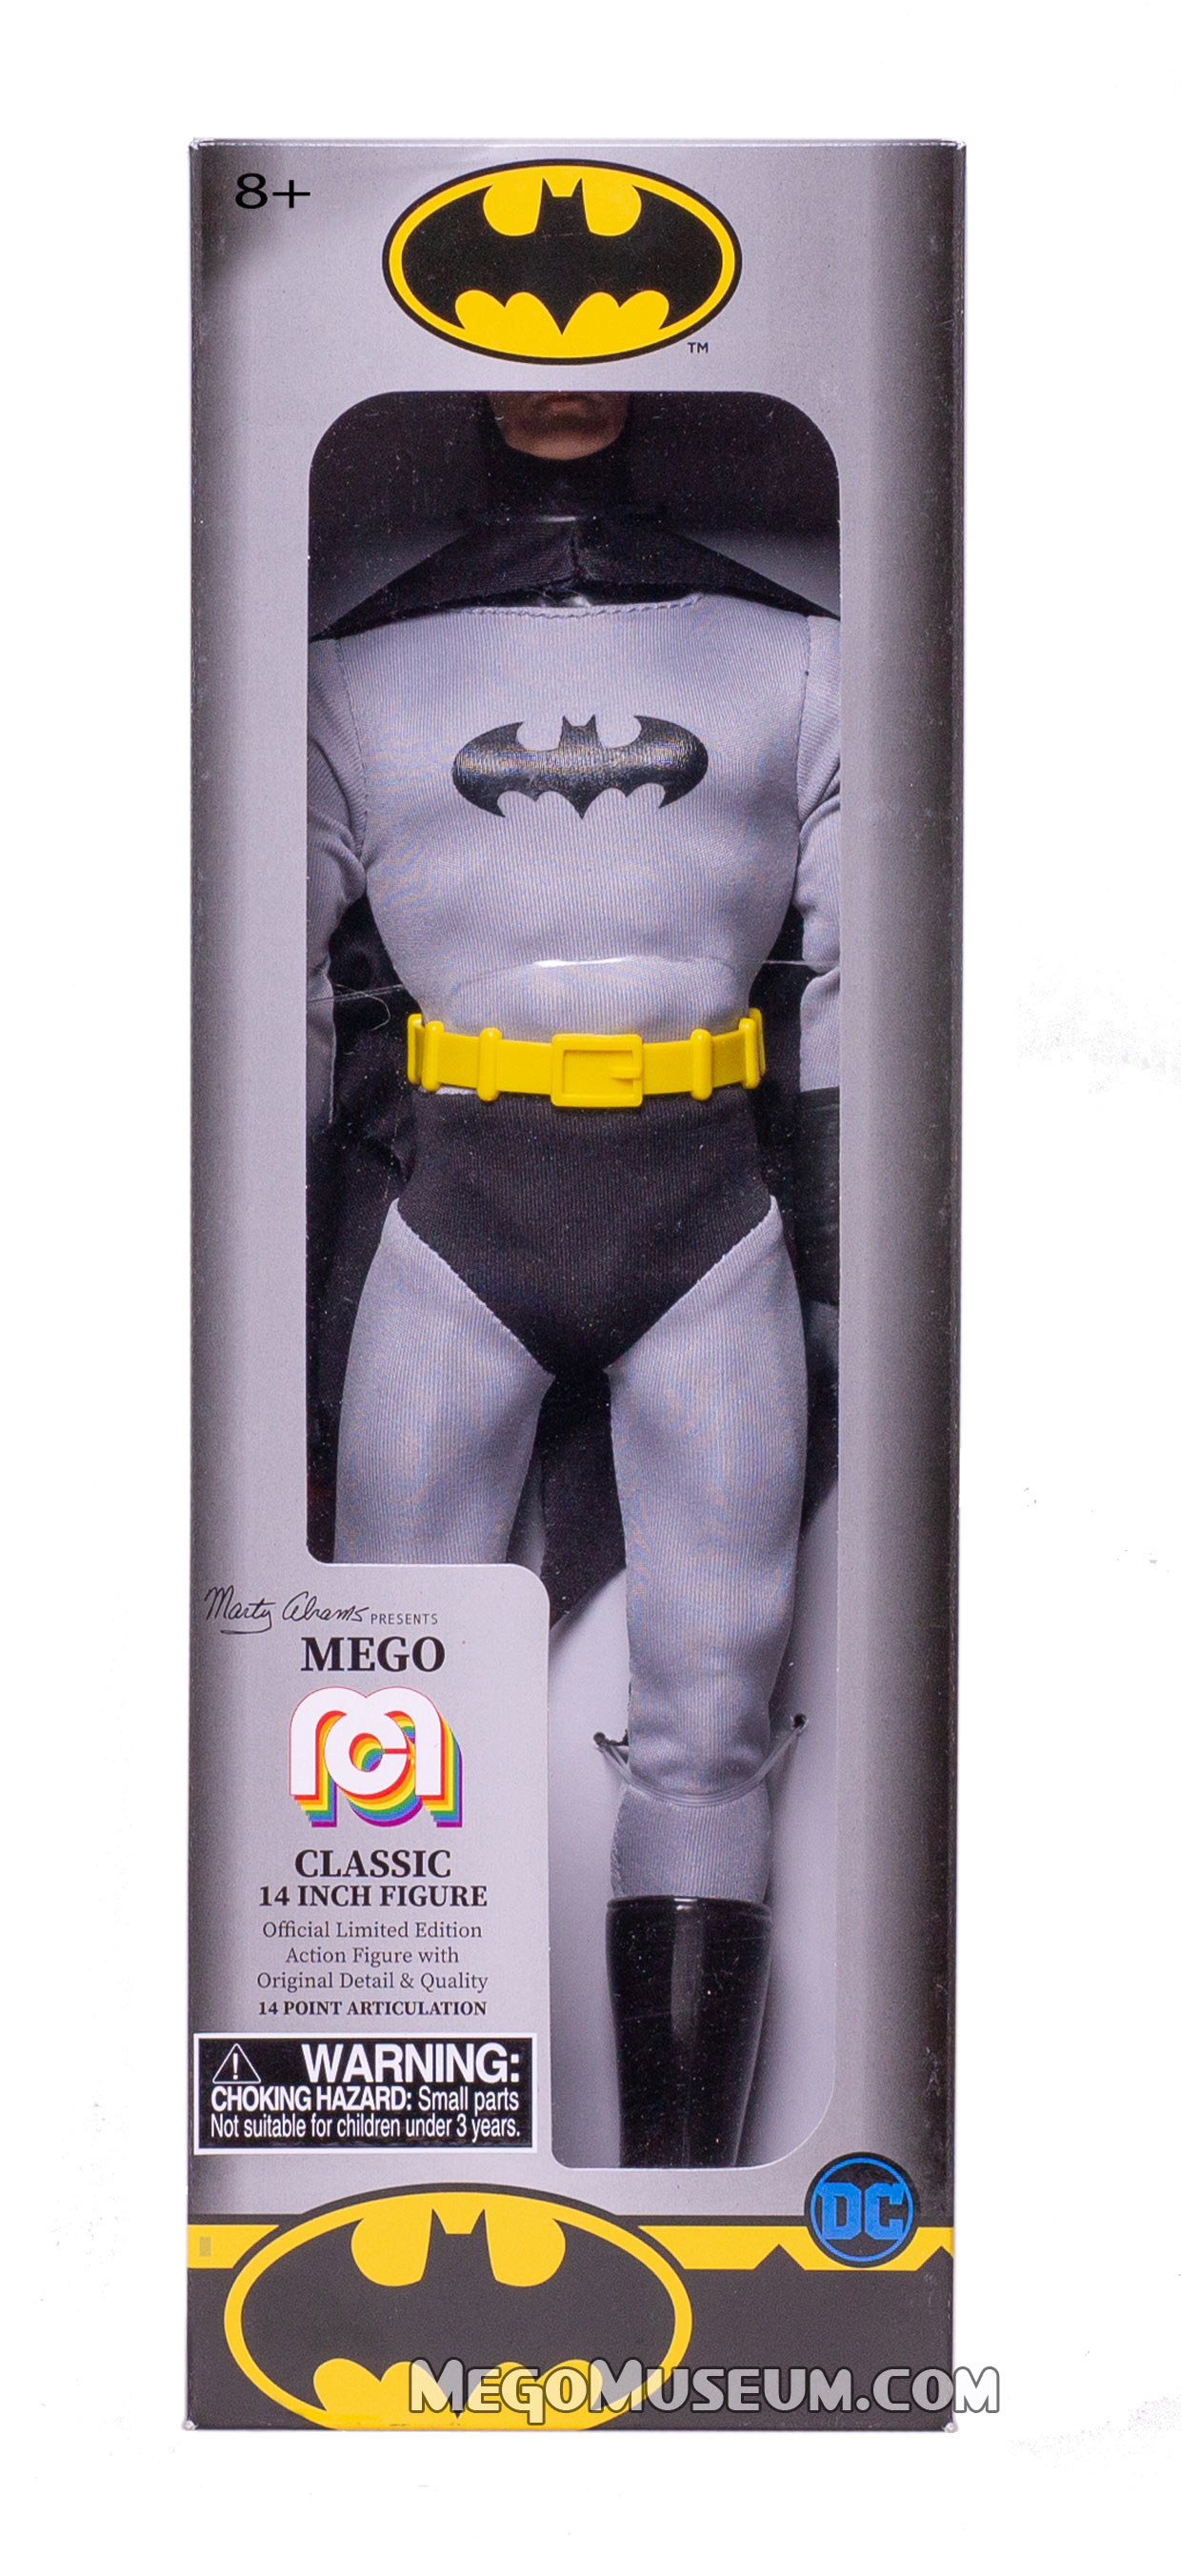 Details about   MEGO BATMAN DC Classic Blue 14 Inch Figure Marty Abrams RCI BRAND NEW LTD 8000 